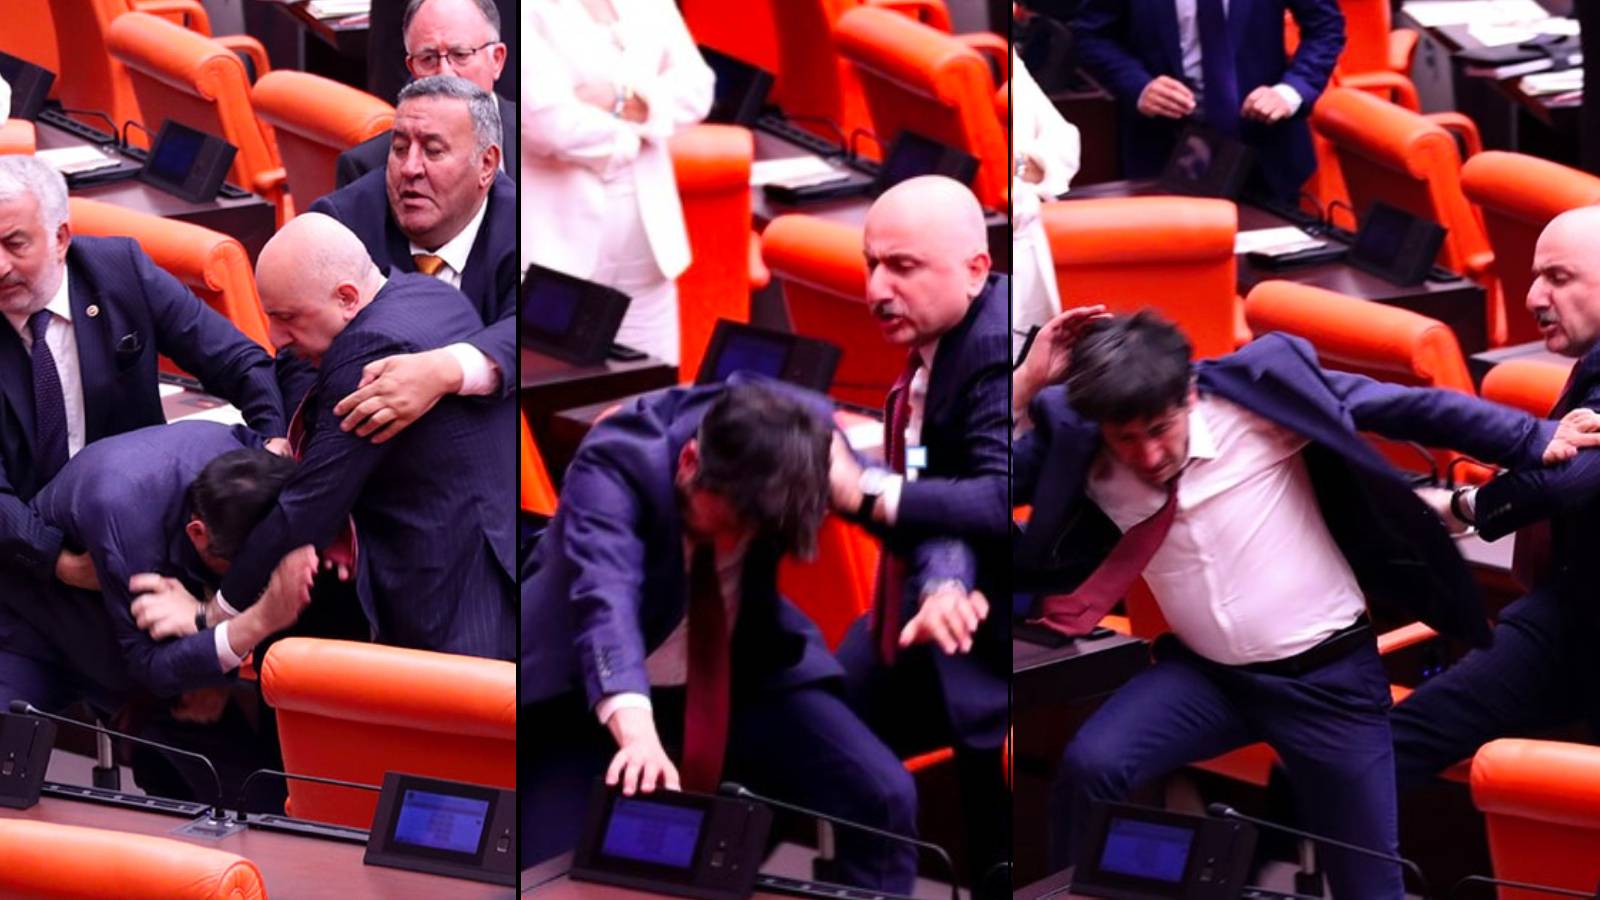 Eski Ulaştırma Bakanı Adil Karaismailoğlu, Genel Kurul’da AKP’ye “Hırsız” diyen DEM Partili Ali Bozan’a tokat attı, vurarak üstüne yürüdü